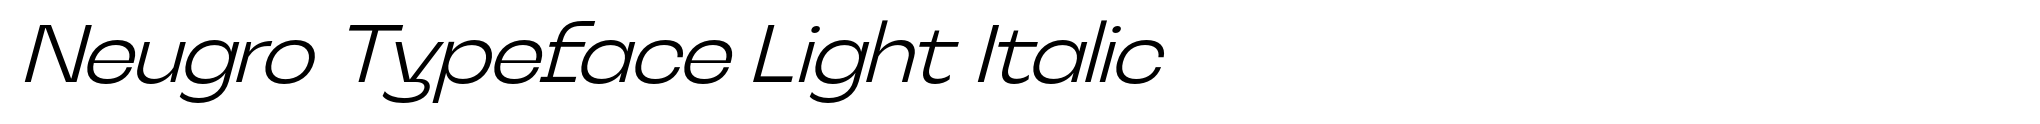 Neugro Typeface Light Italic image